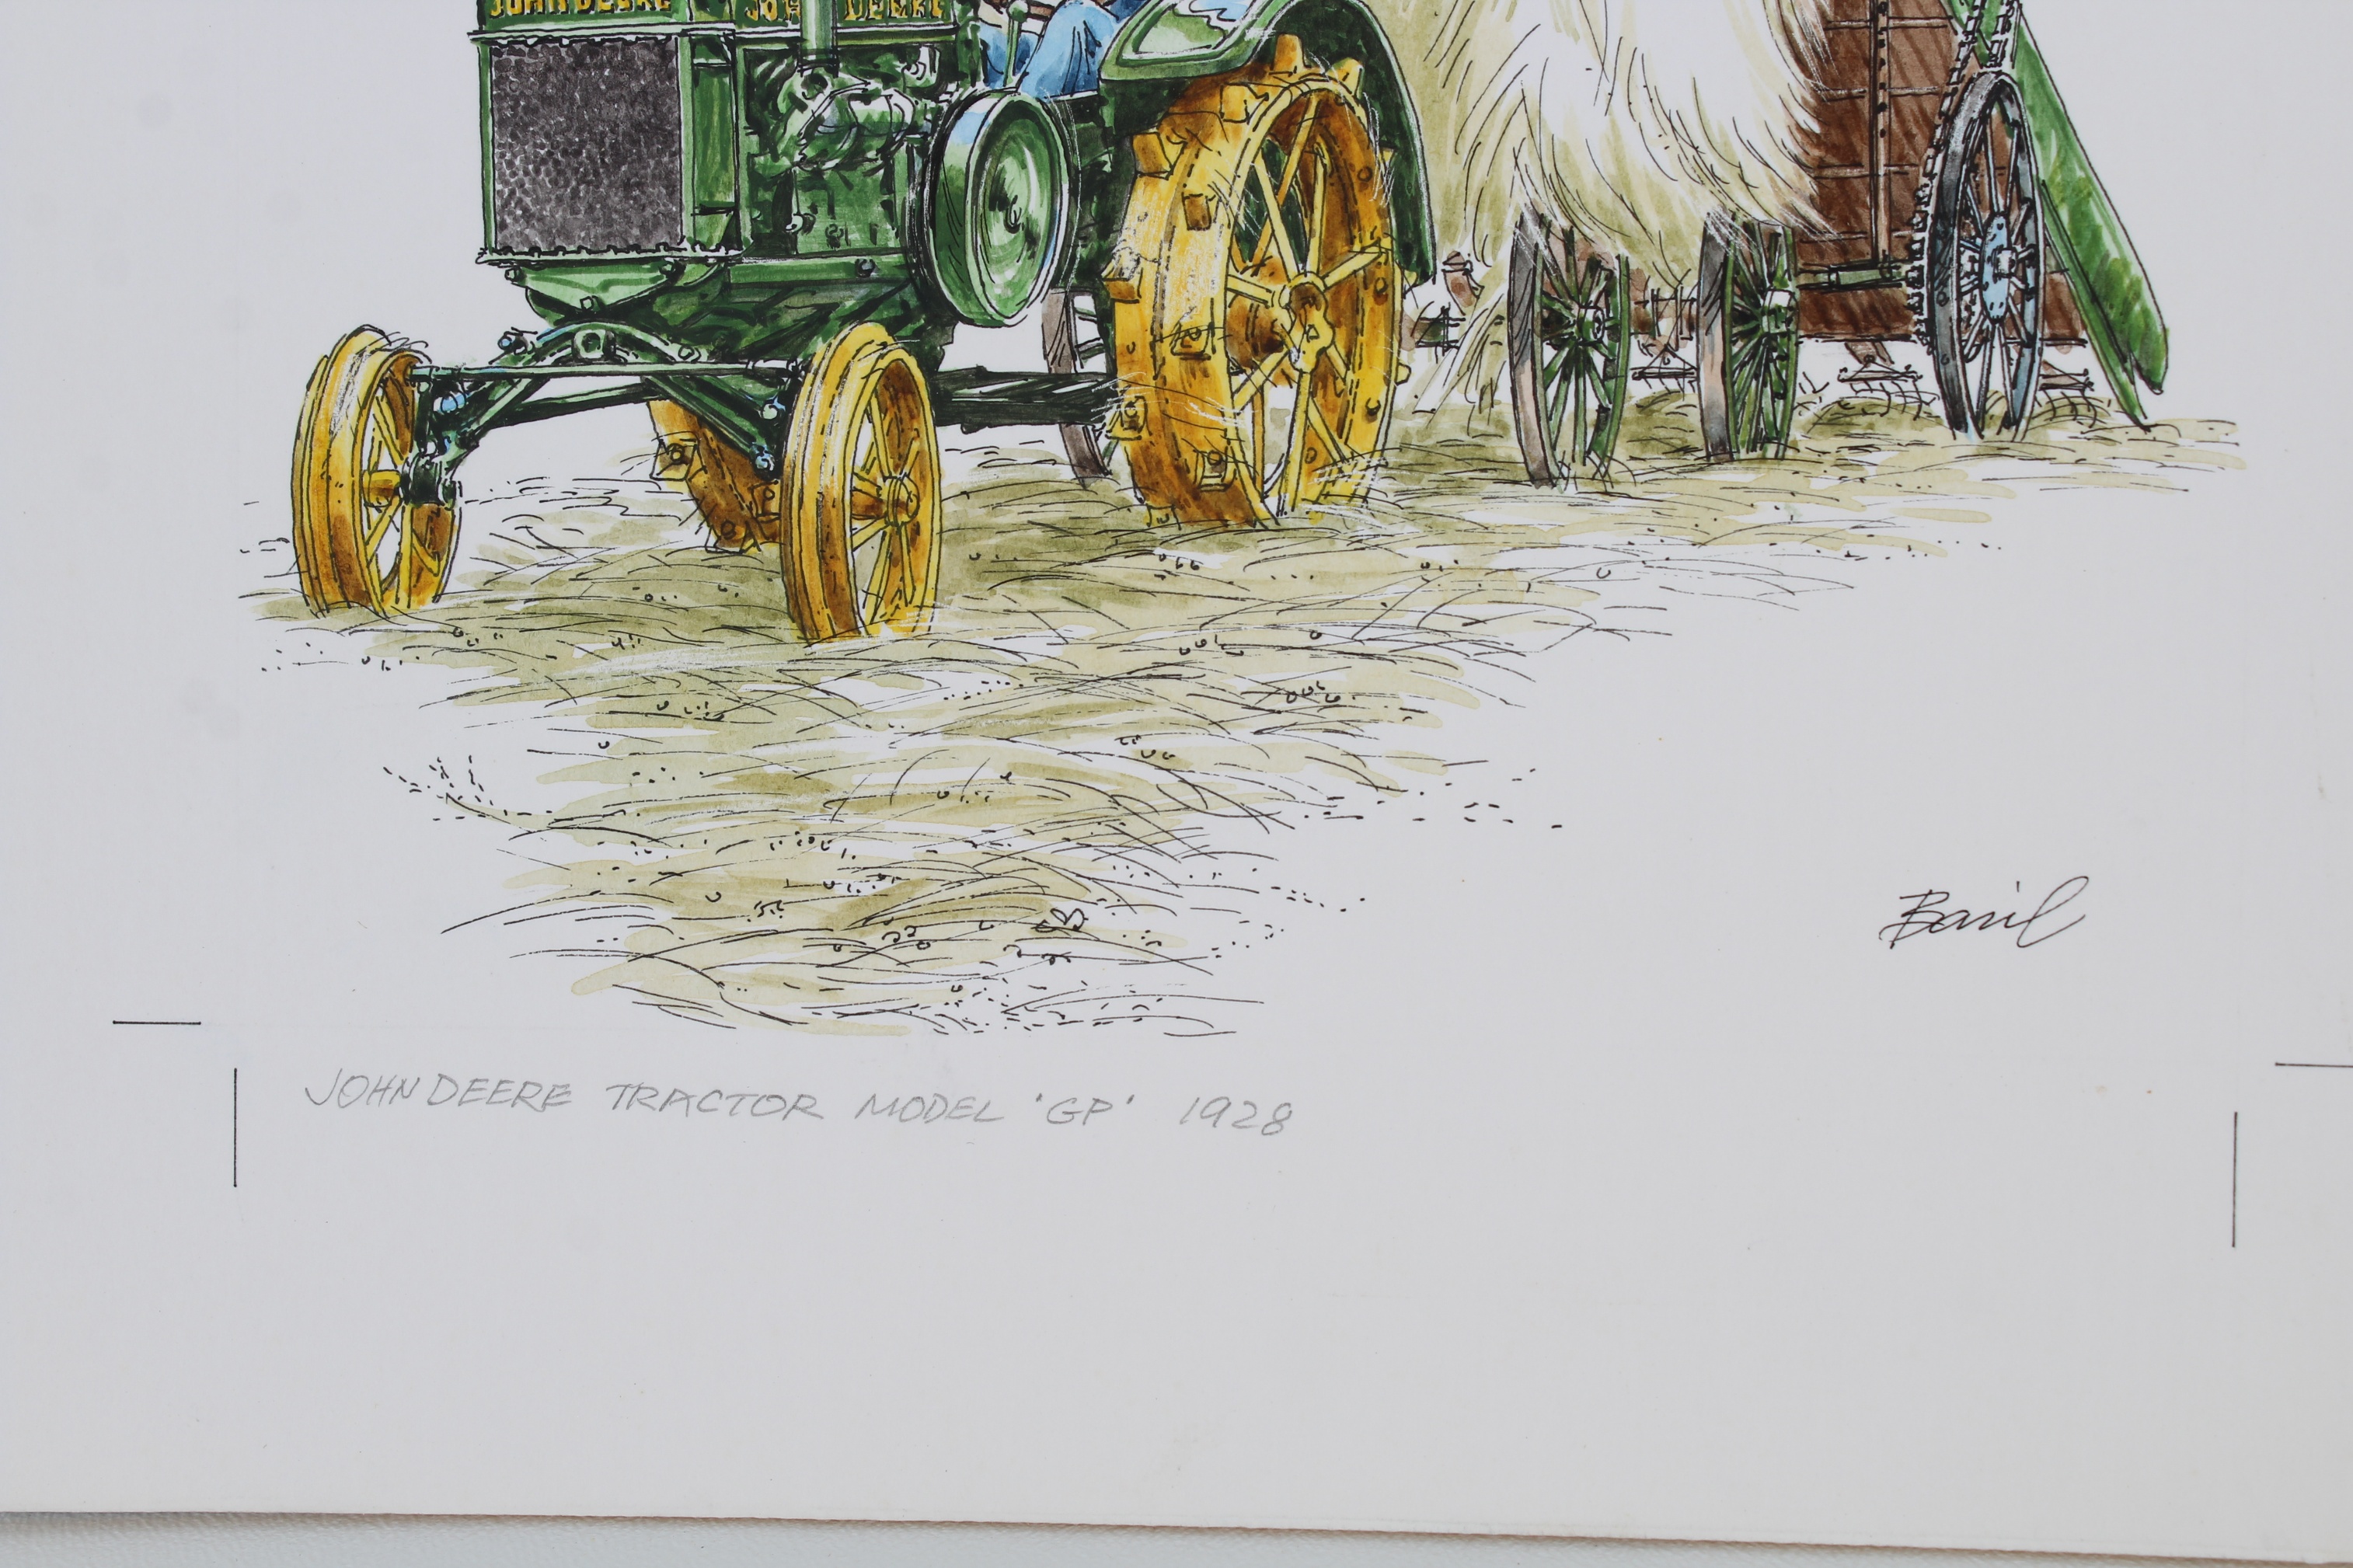 Basil Smith (B 1925) "John Deere Tractor" Original - Image 3 of 4